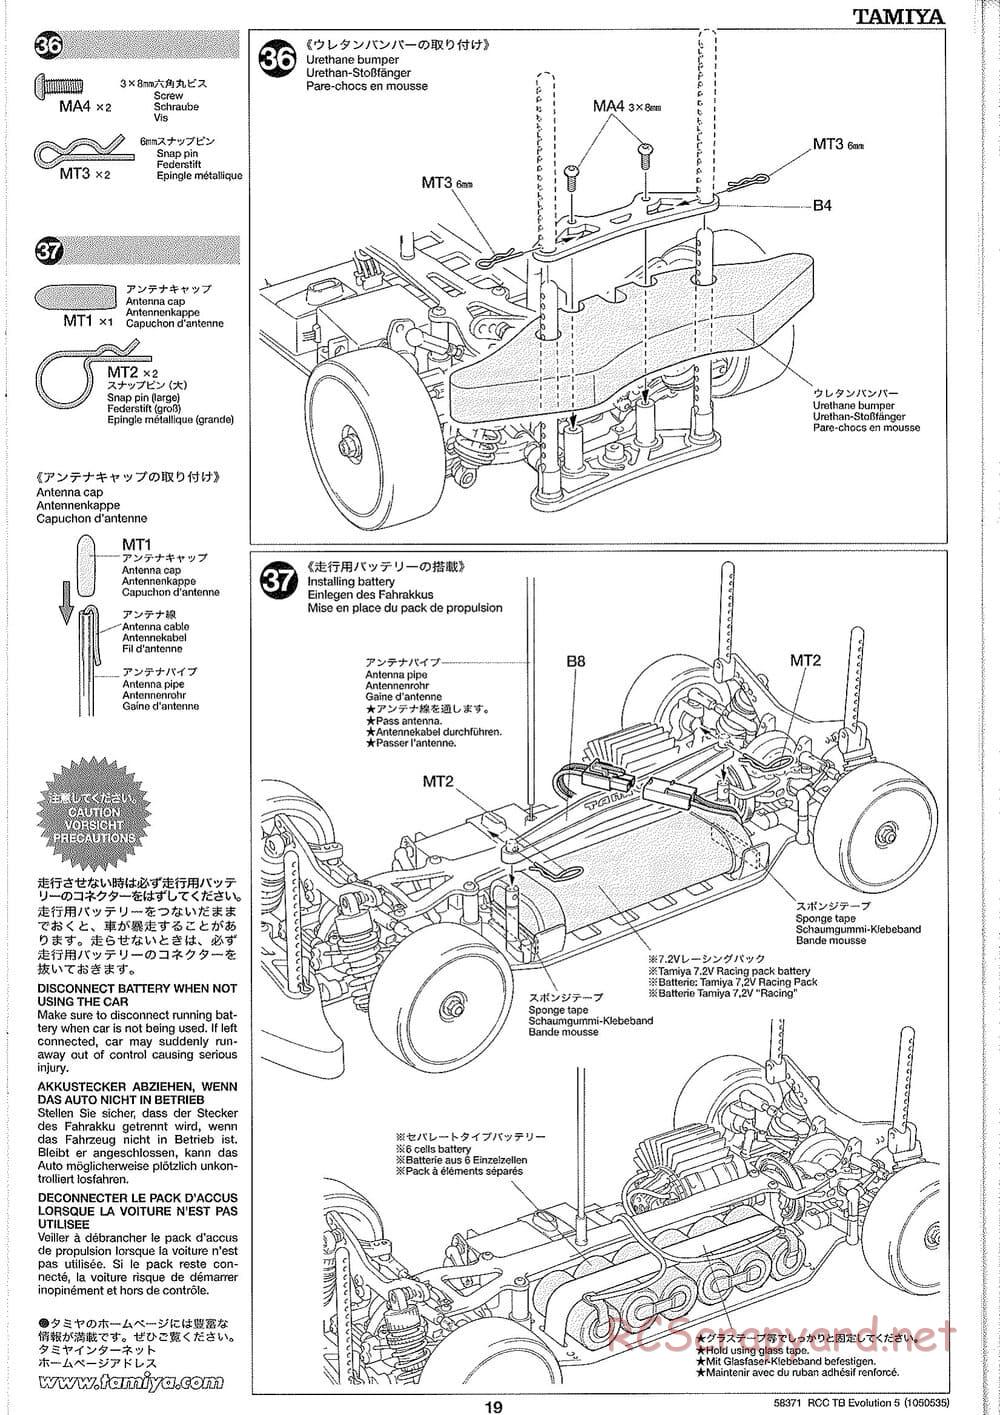 Tamiya - TB Evolution V Chassis - Manual - Page 19